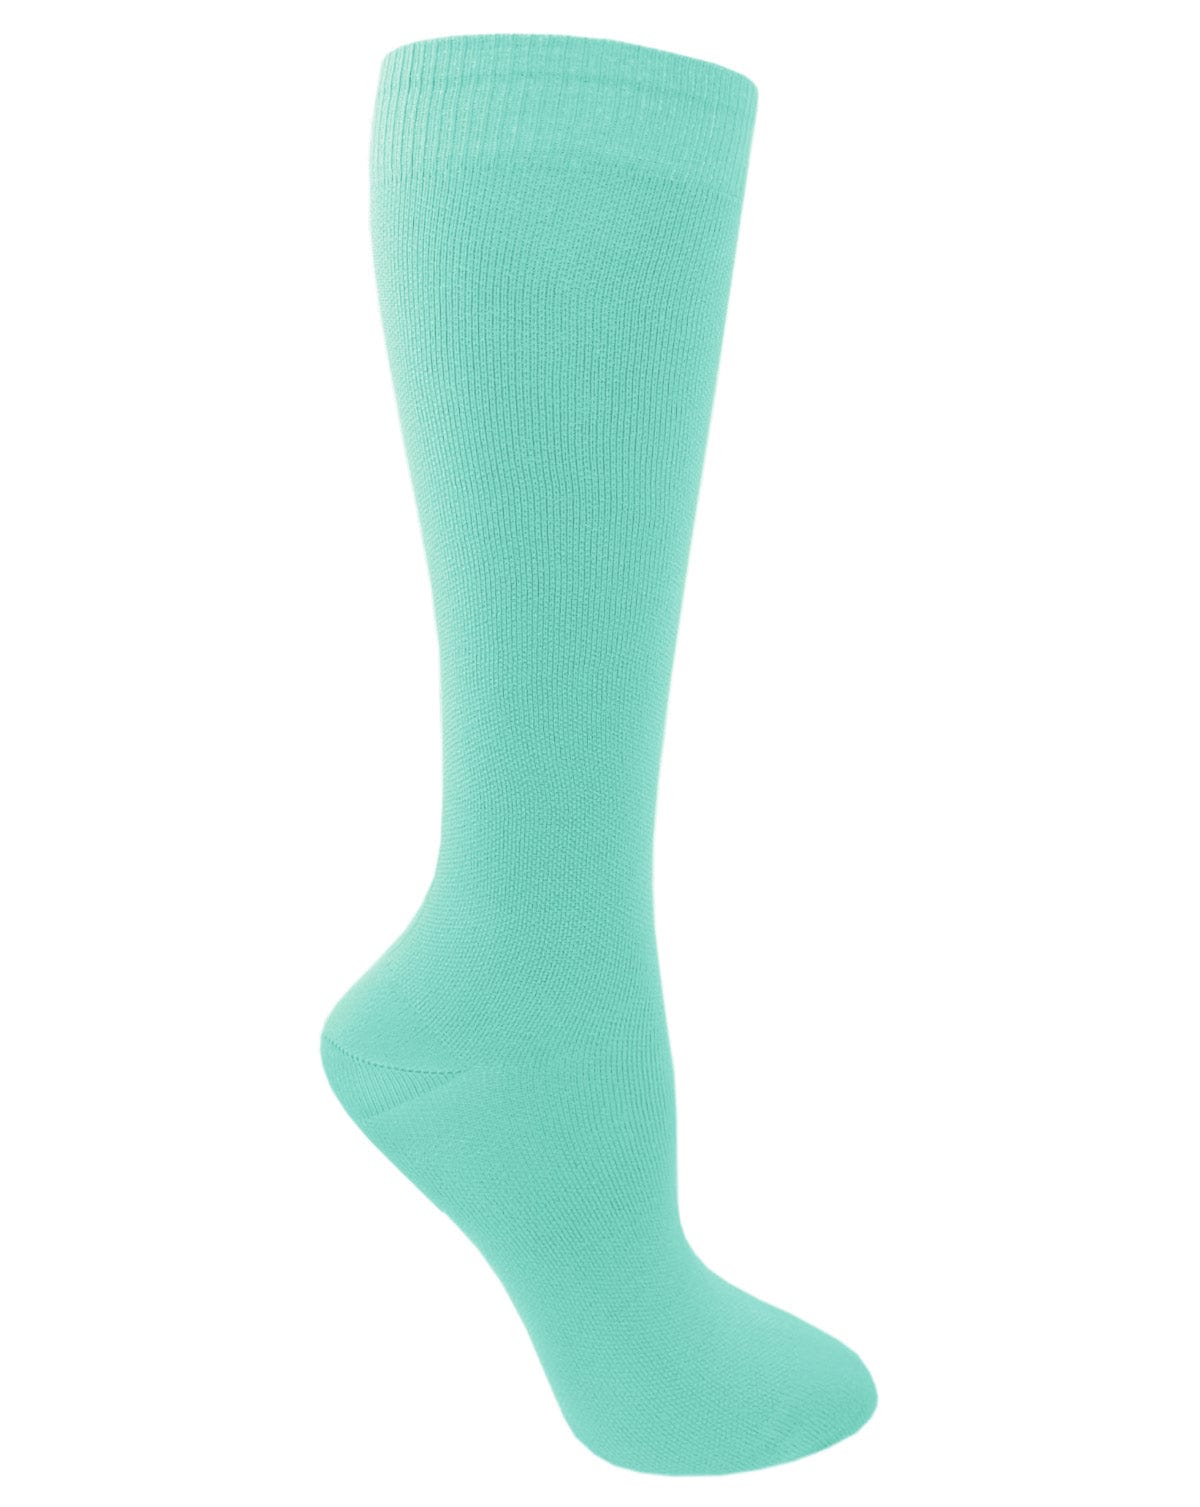 Prestige Medical Socks Pastel Green Prestige 30cm Premium Knit Compression Socks